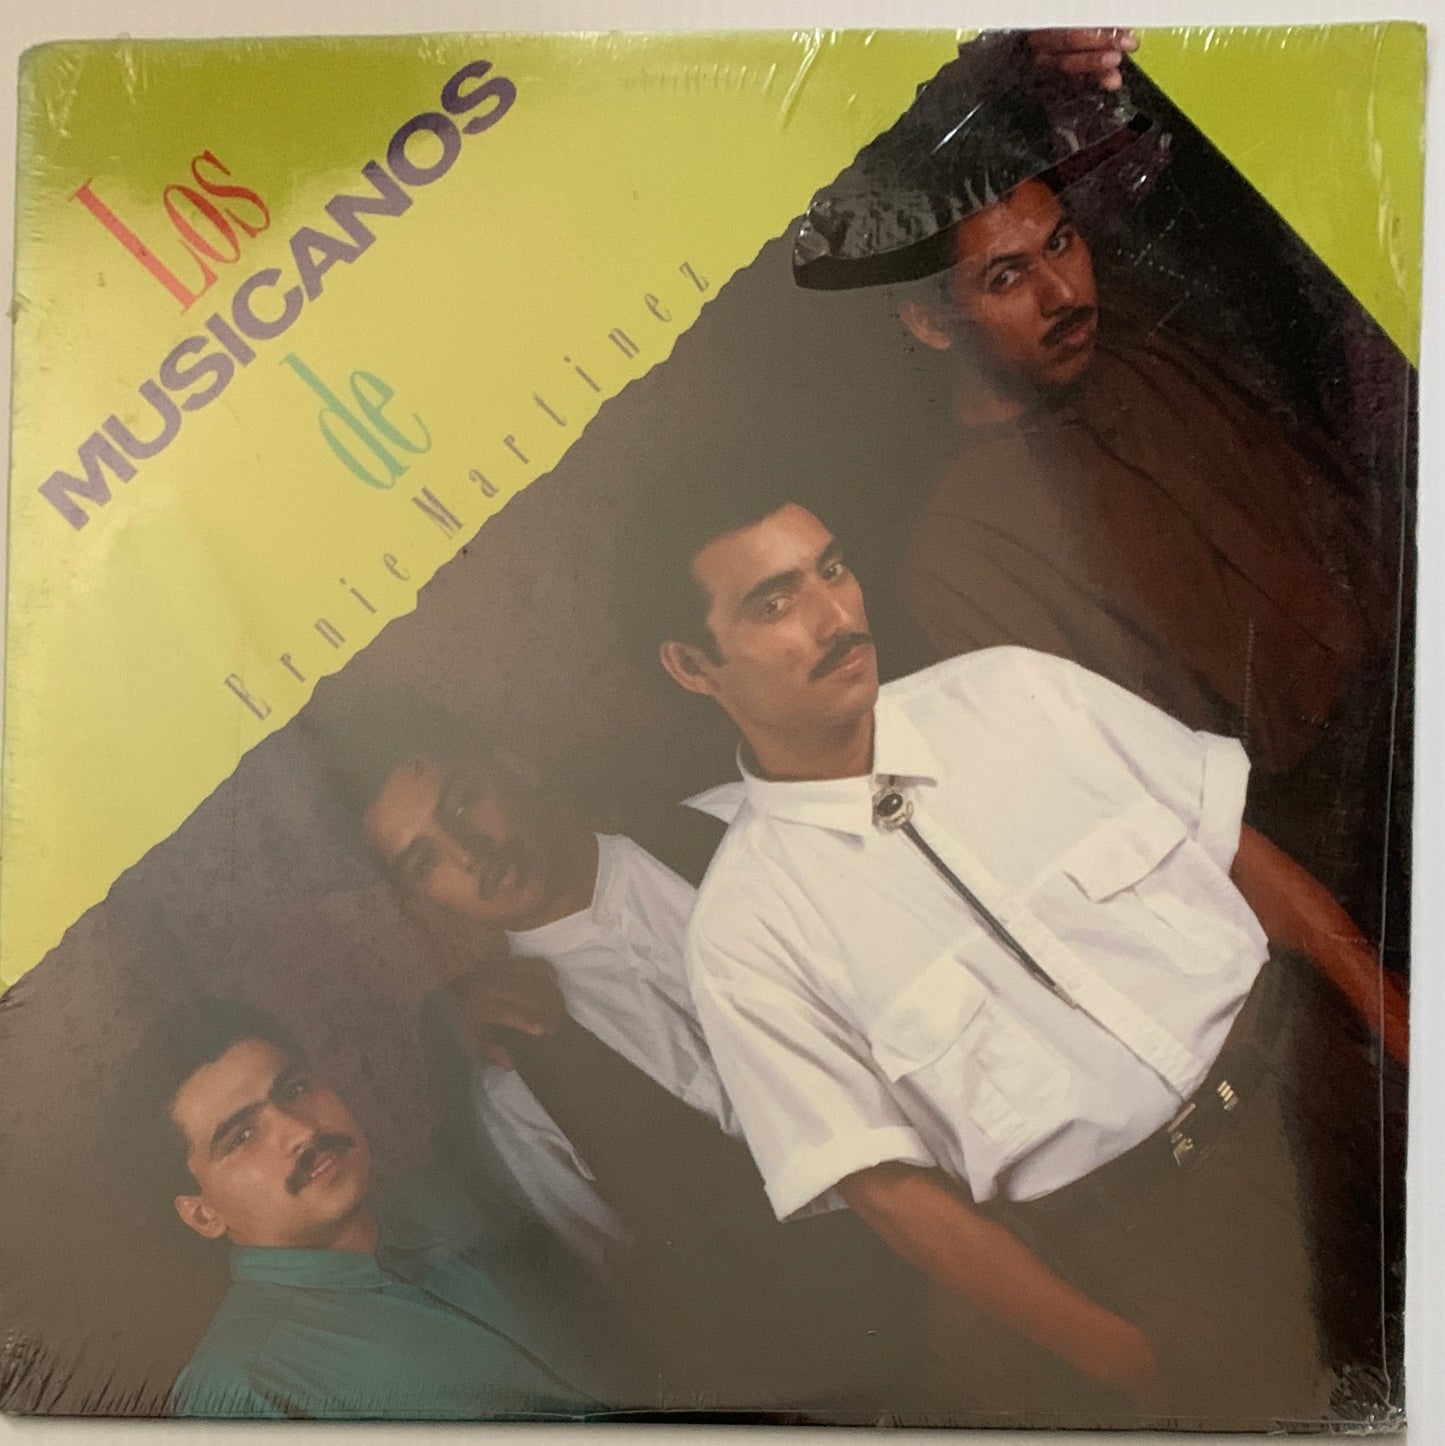 Los Musicanos De Ernie Martinez - El Mayor Tesoro (Vinyl)